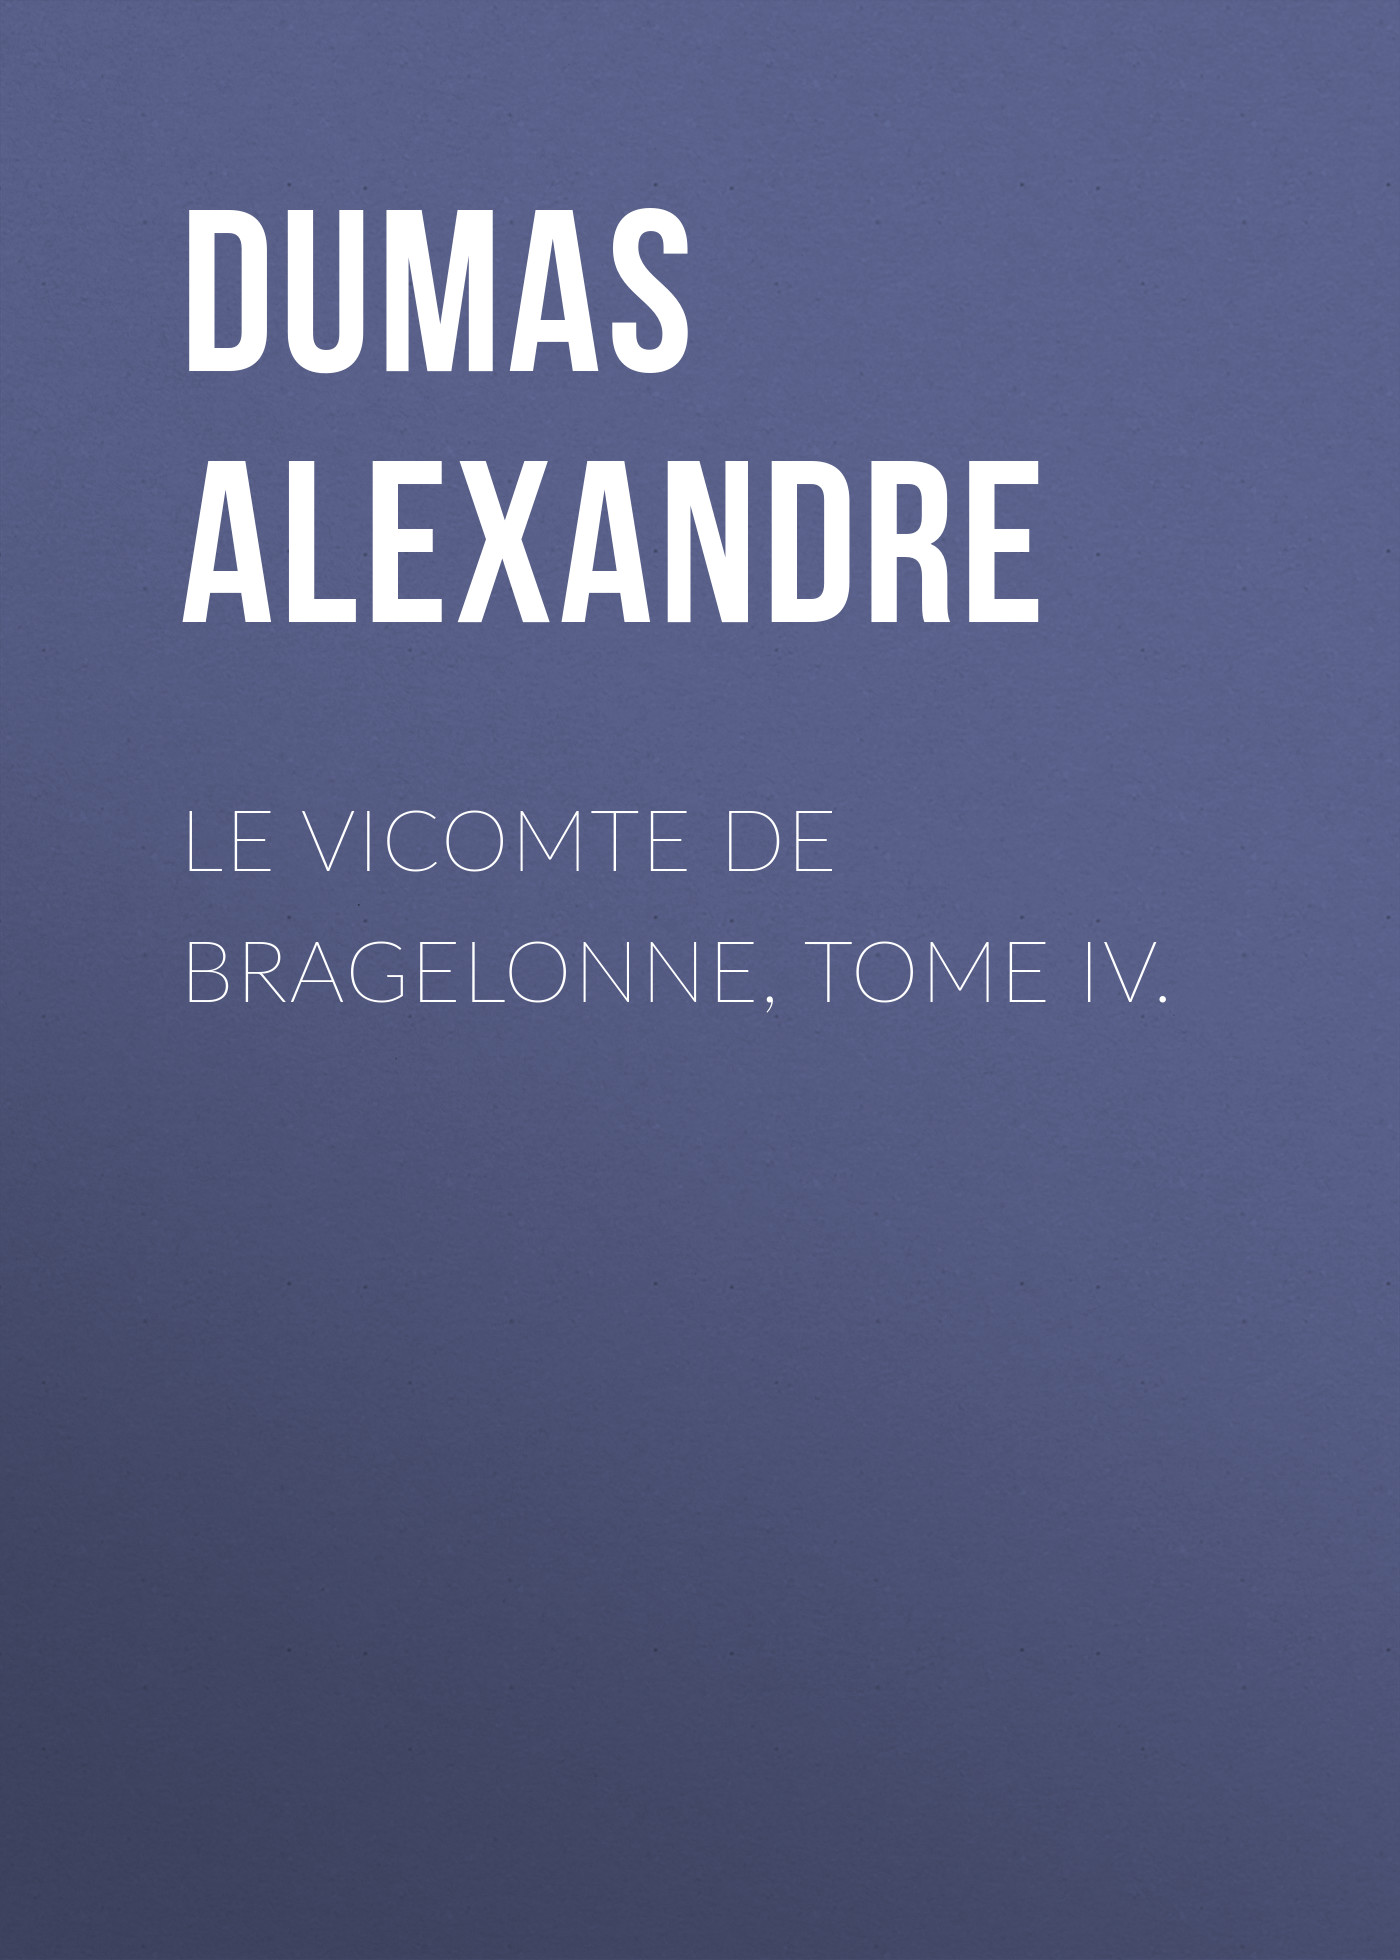 Книга Le vicomte de Bragelonne, Tome IV. из серии , созданная Alexandre Dumas, может относится к жанру Литература 19 века, Зарубежная старинная литература, Зарубежная классика. Стоимость электронной книги Le vicomte de Bragelonne, Tome IV. с идентификатором 25201831 составляет 0 руб.